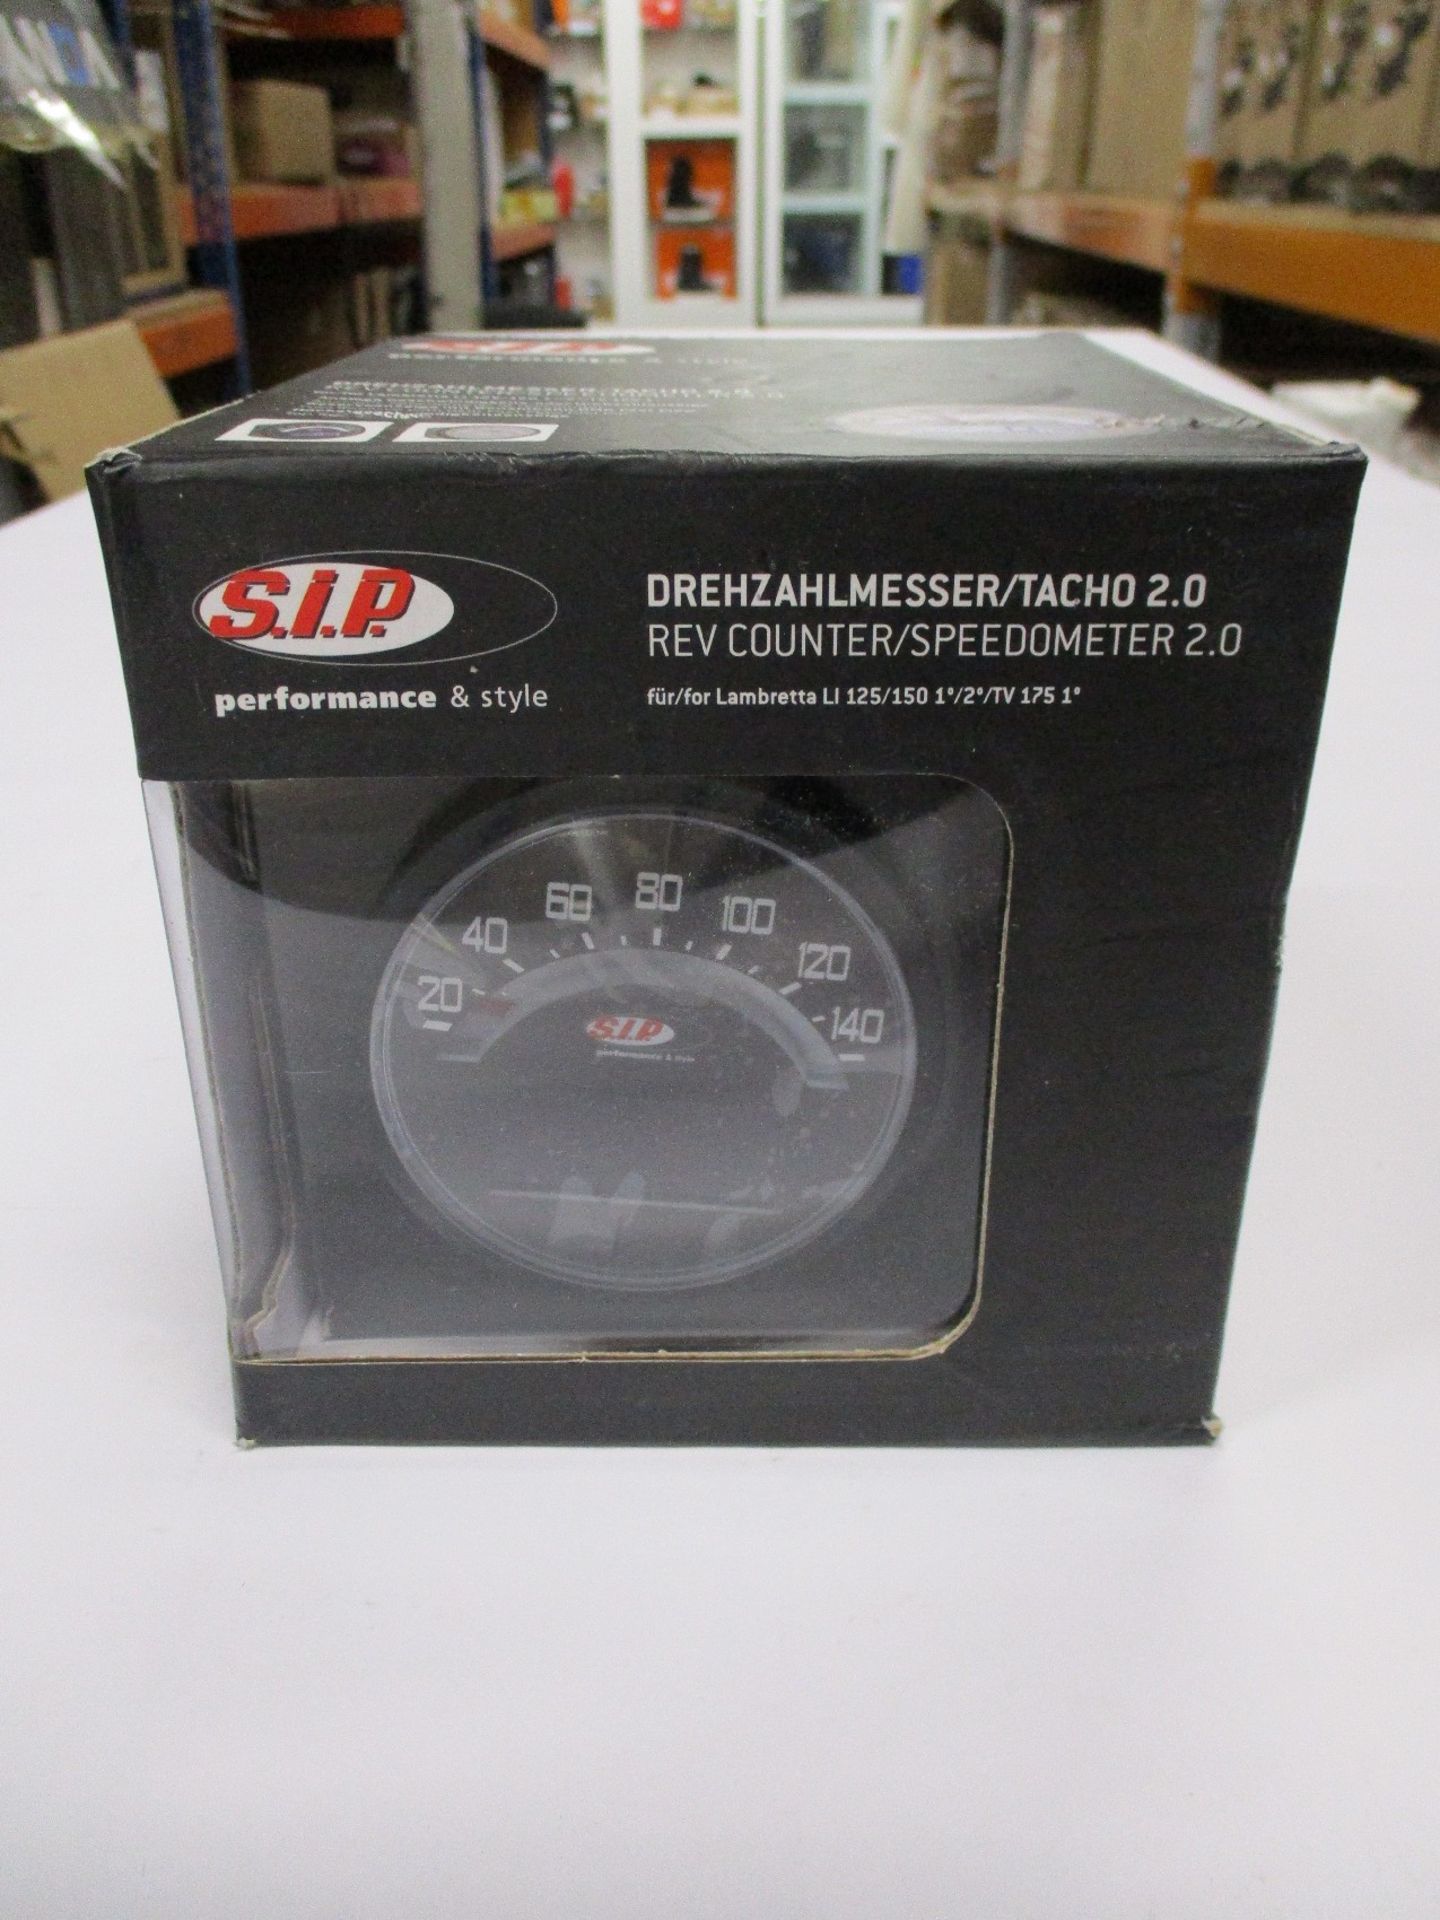 A boxed as new S.I.P Rev Counter/Speedometer for Lambretta LI 125/150 1/2/TV 175 1 (50000900).